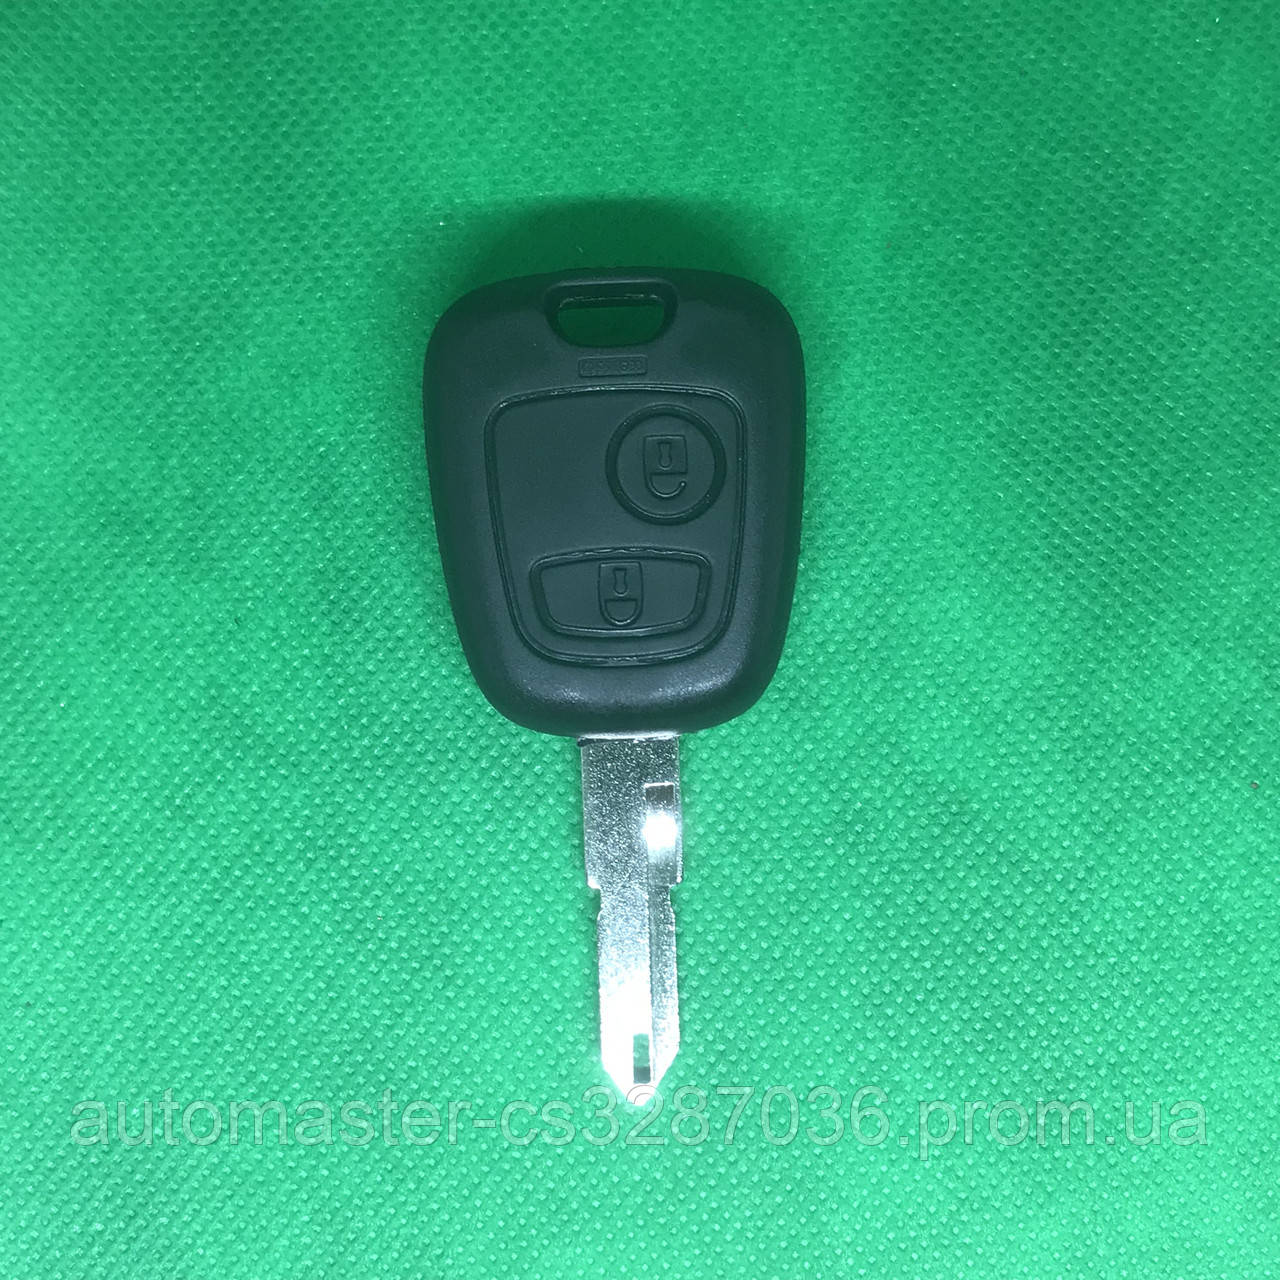 Автоключ для PEUGEOT 206 (Пежо), 2 кнопки, с чипом ID46, PCF 7961, 433 Mhz, лезвие NE73